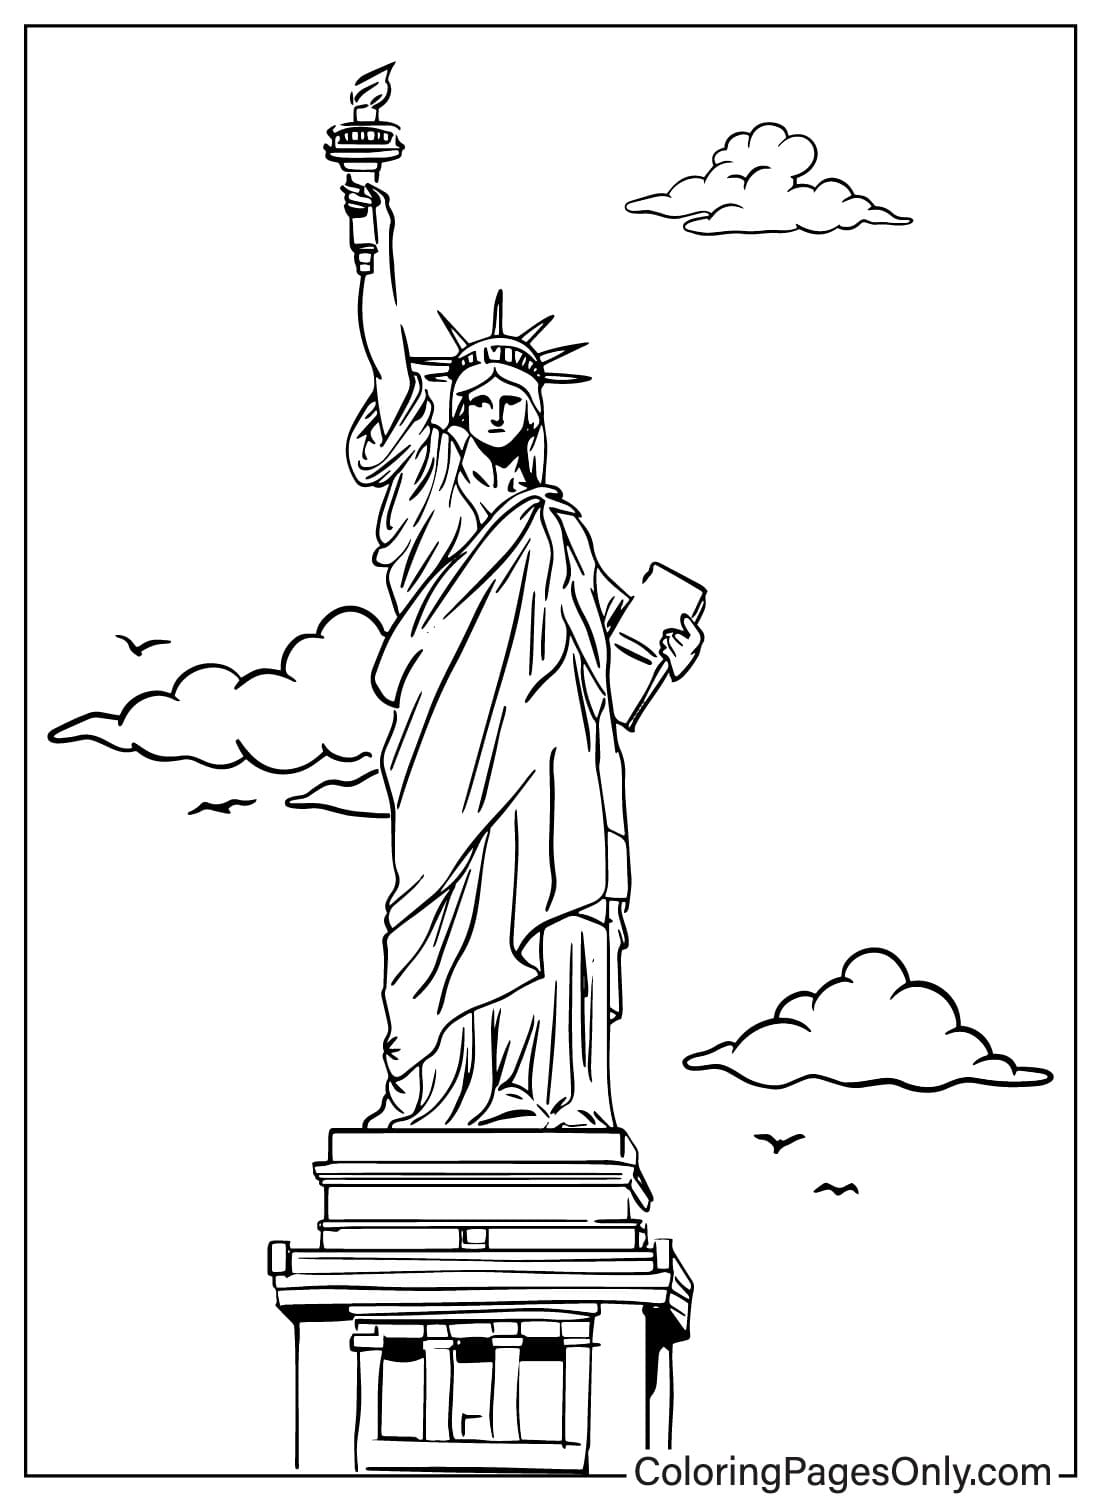 Foglio da colorare architettonico della Statua della Libertà